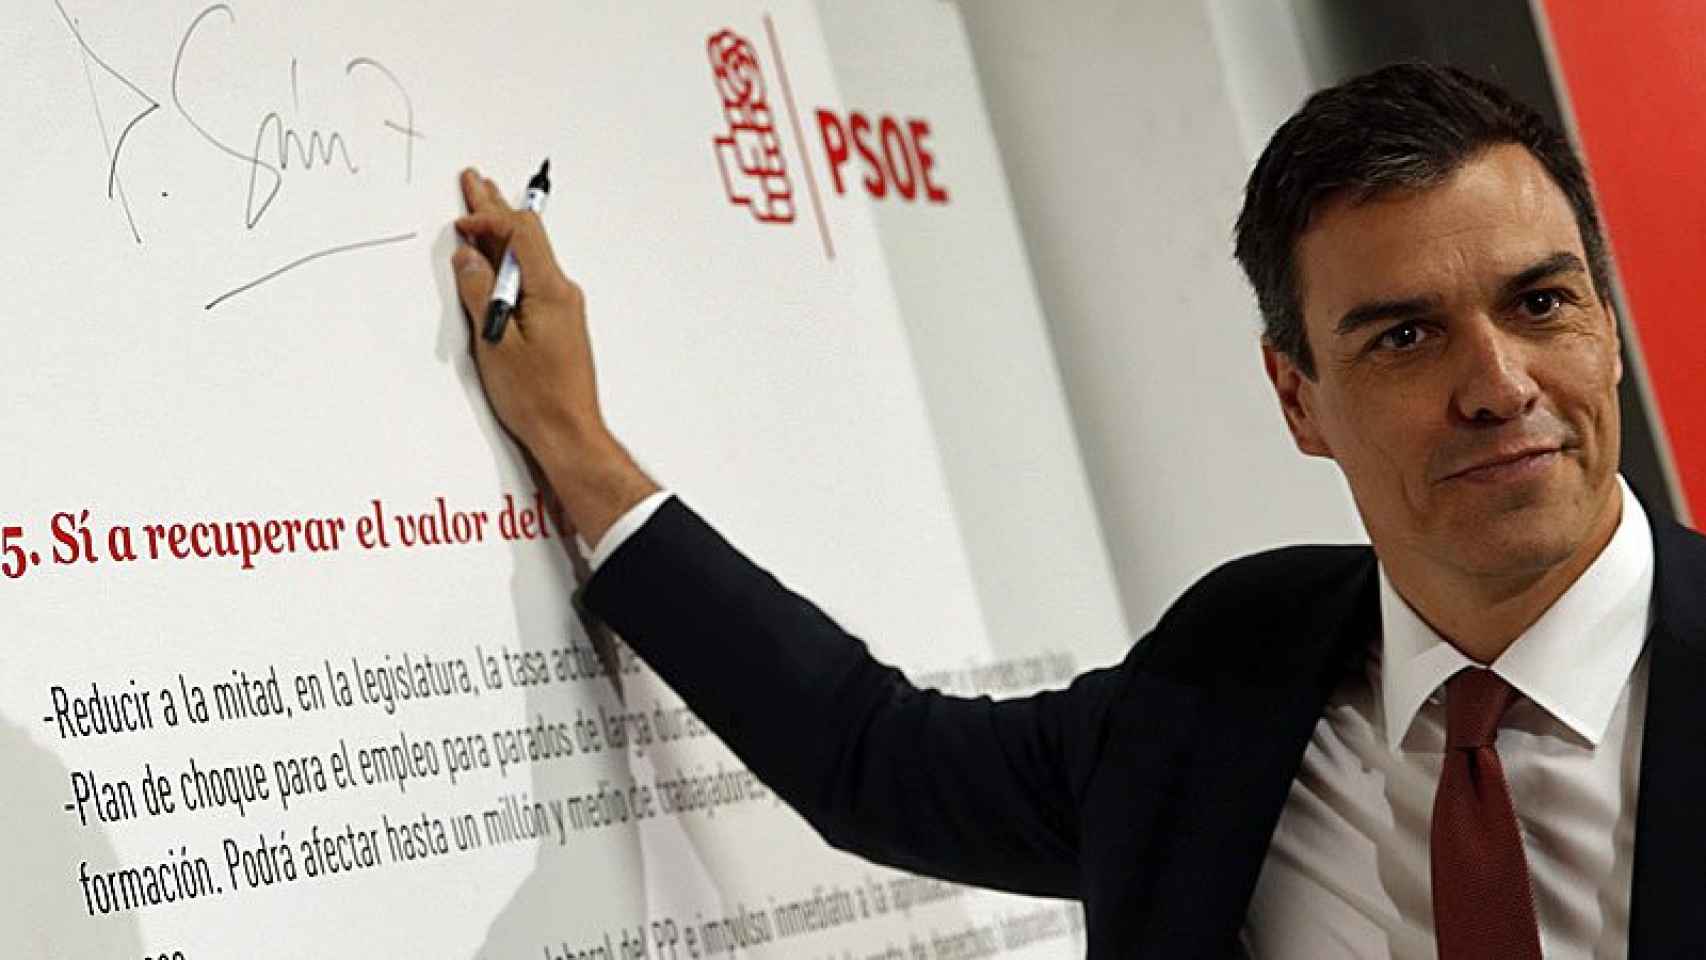 Pedro Sánchez, líder del PSOE, durante el acto de presentación de sus propuestas electorales para un gobierno de cambio.